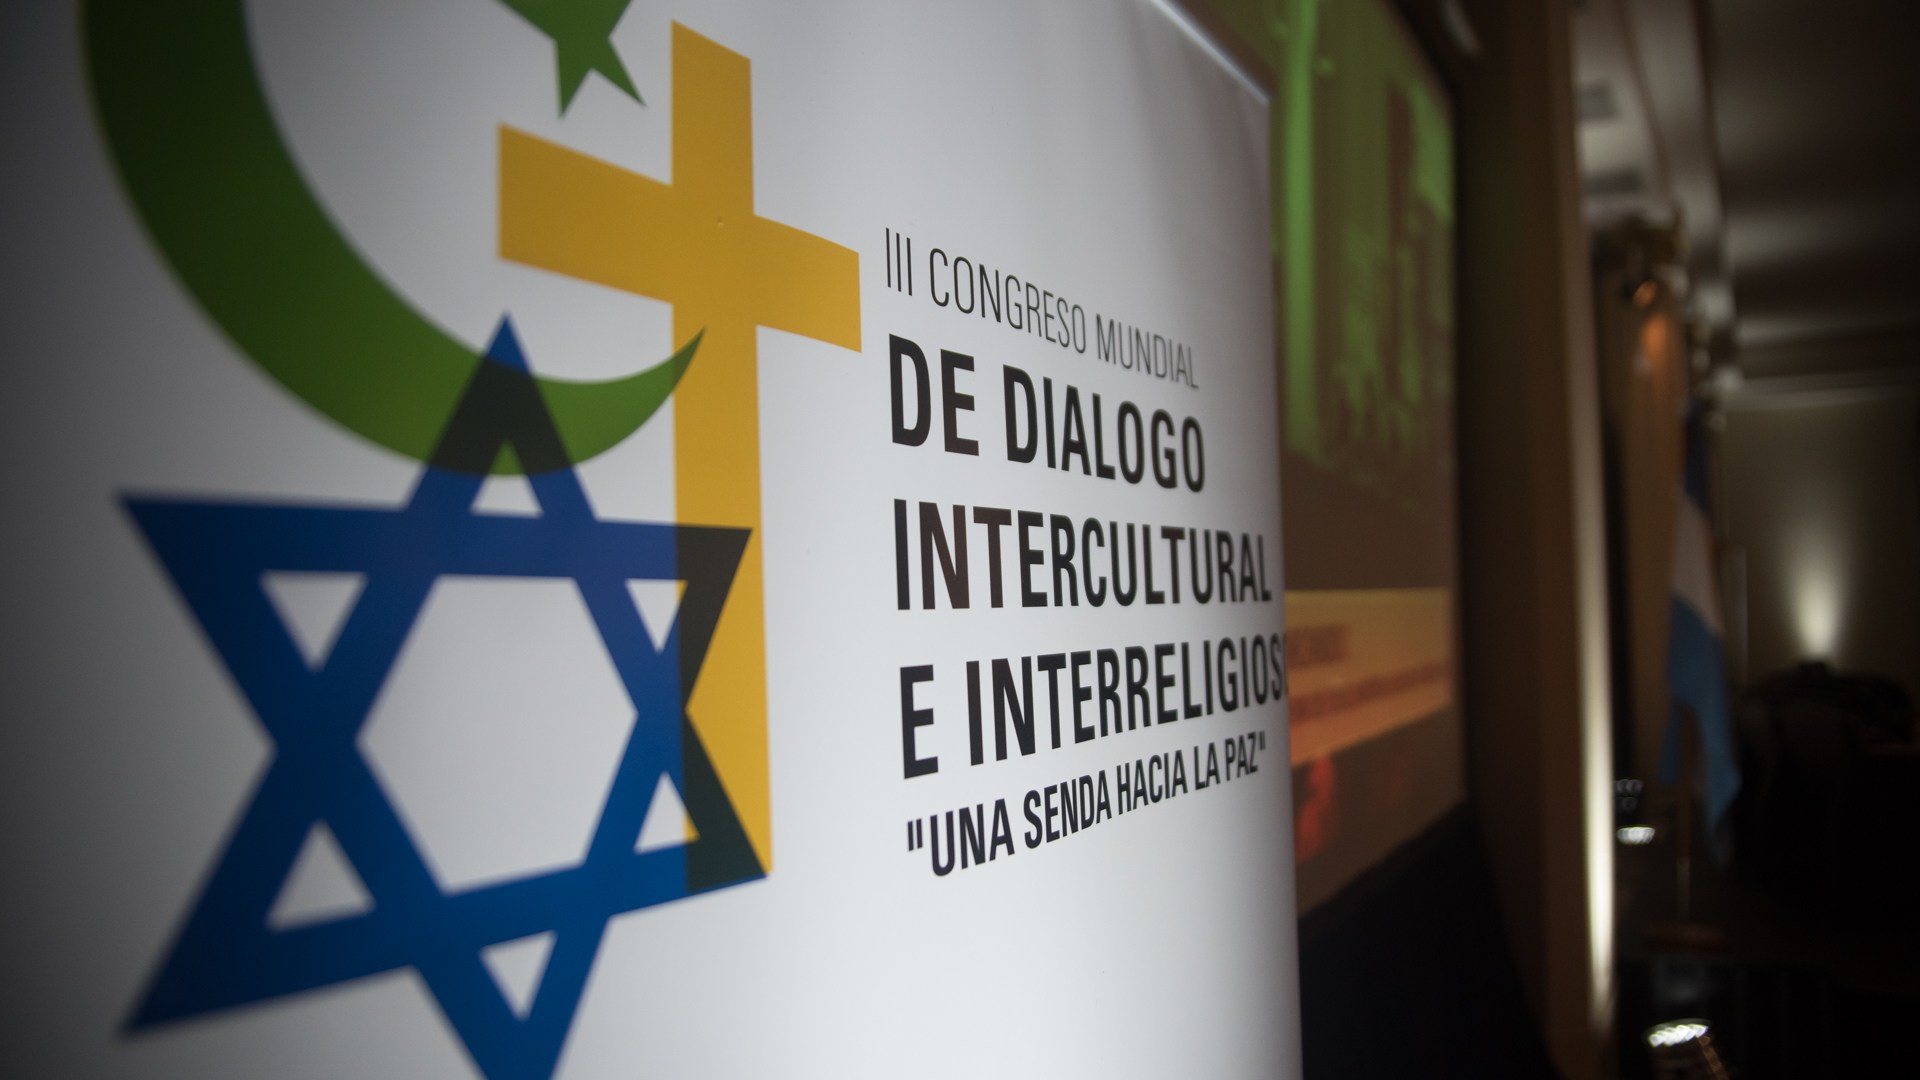 El titular del Congreso Mundial de Dialogo Intercultural e Interreligioso hizo un llamado a la unidad nacional (Manuel Cortina)